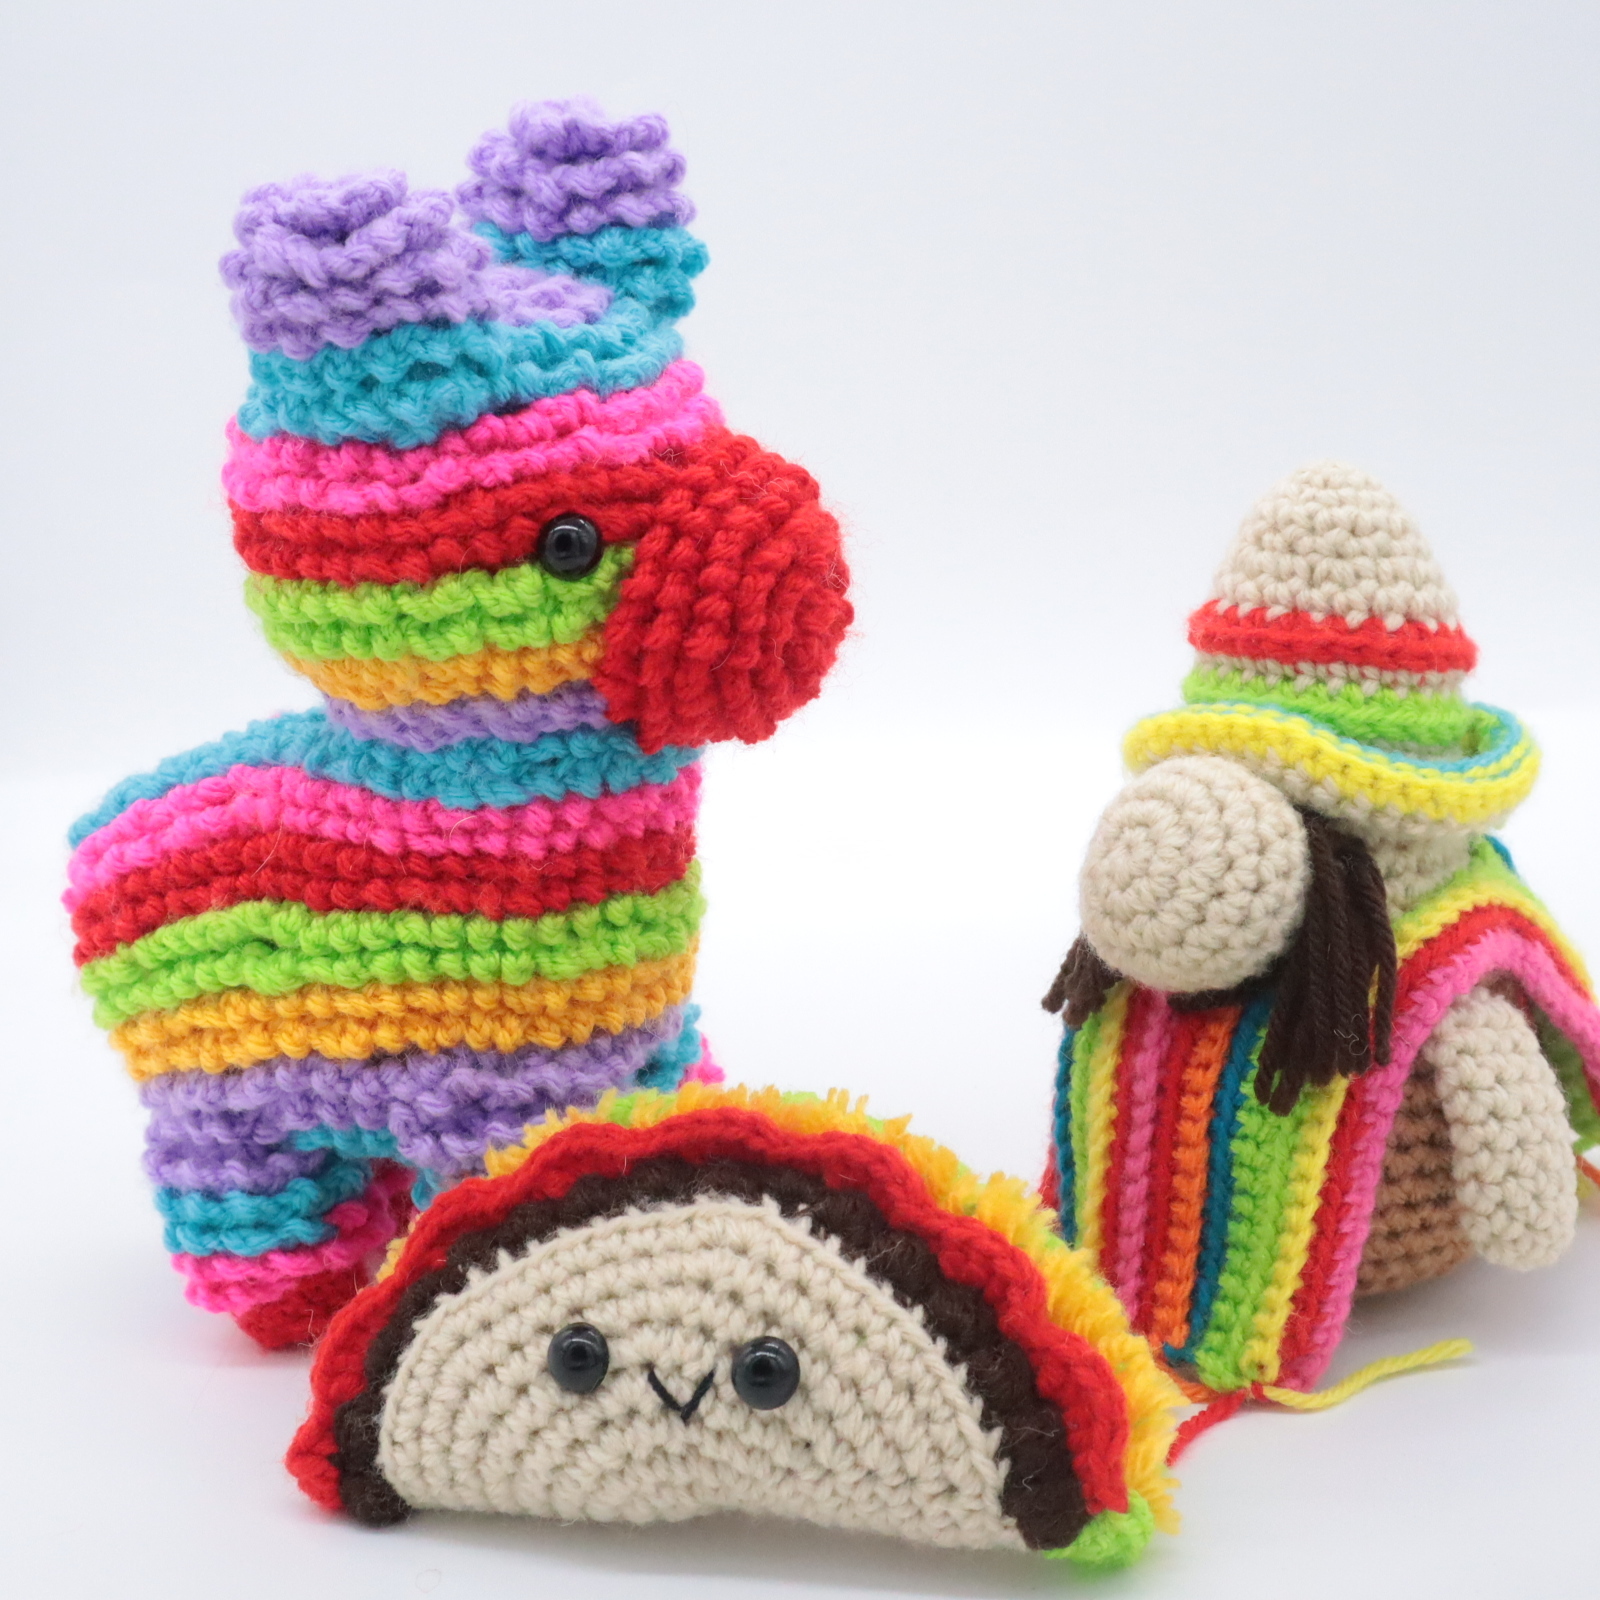 Free cinco de mayo mexican amigurumi crochet pattern bundle